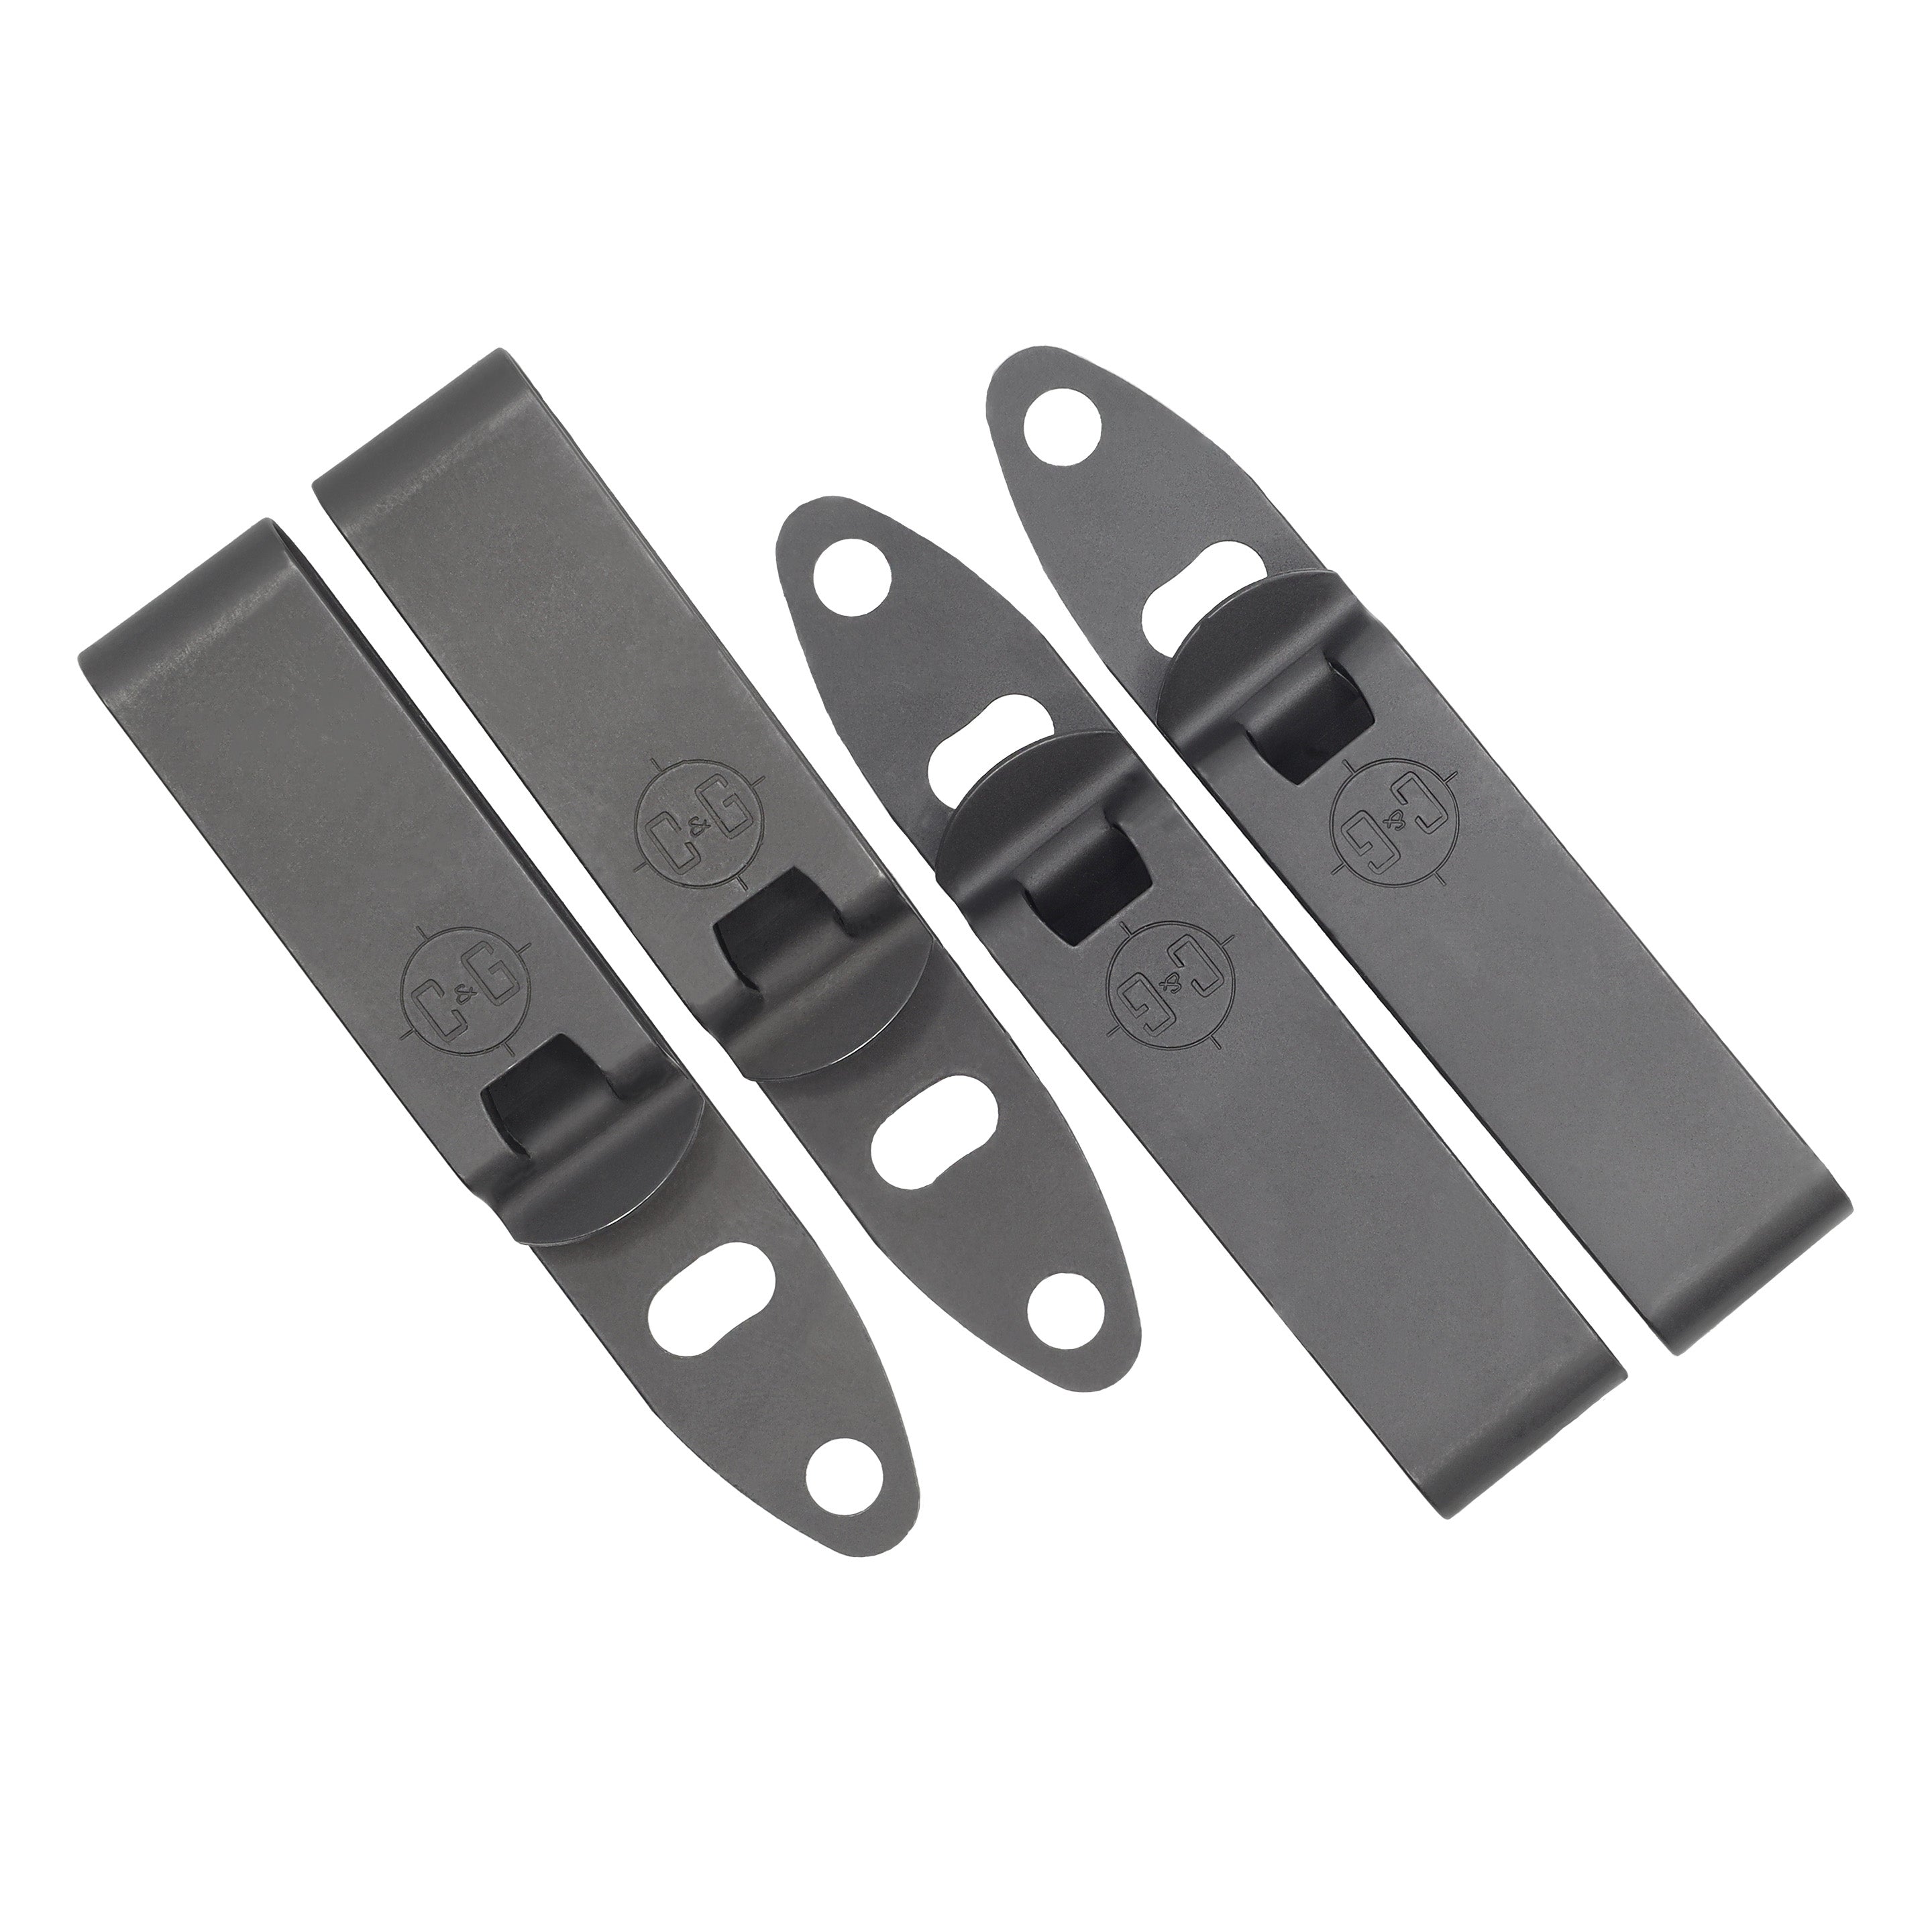 C&G DCC Mod4 Shorty | IWB Metal Belt Clips | Attachment | C&G Holsters 1.50 DCC Mod4 Shorty Set (x2)